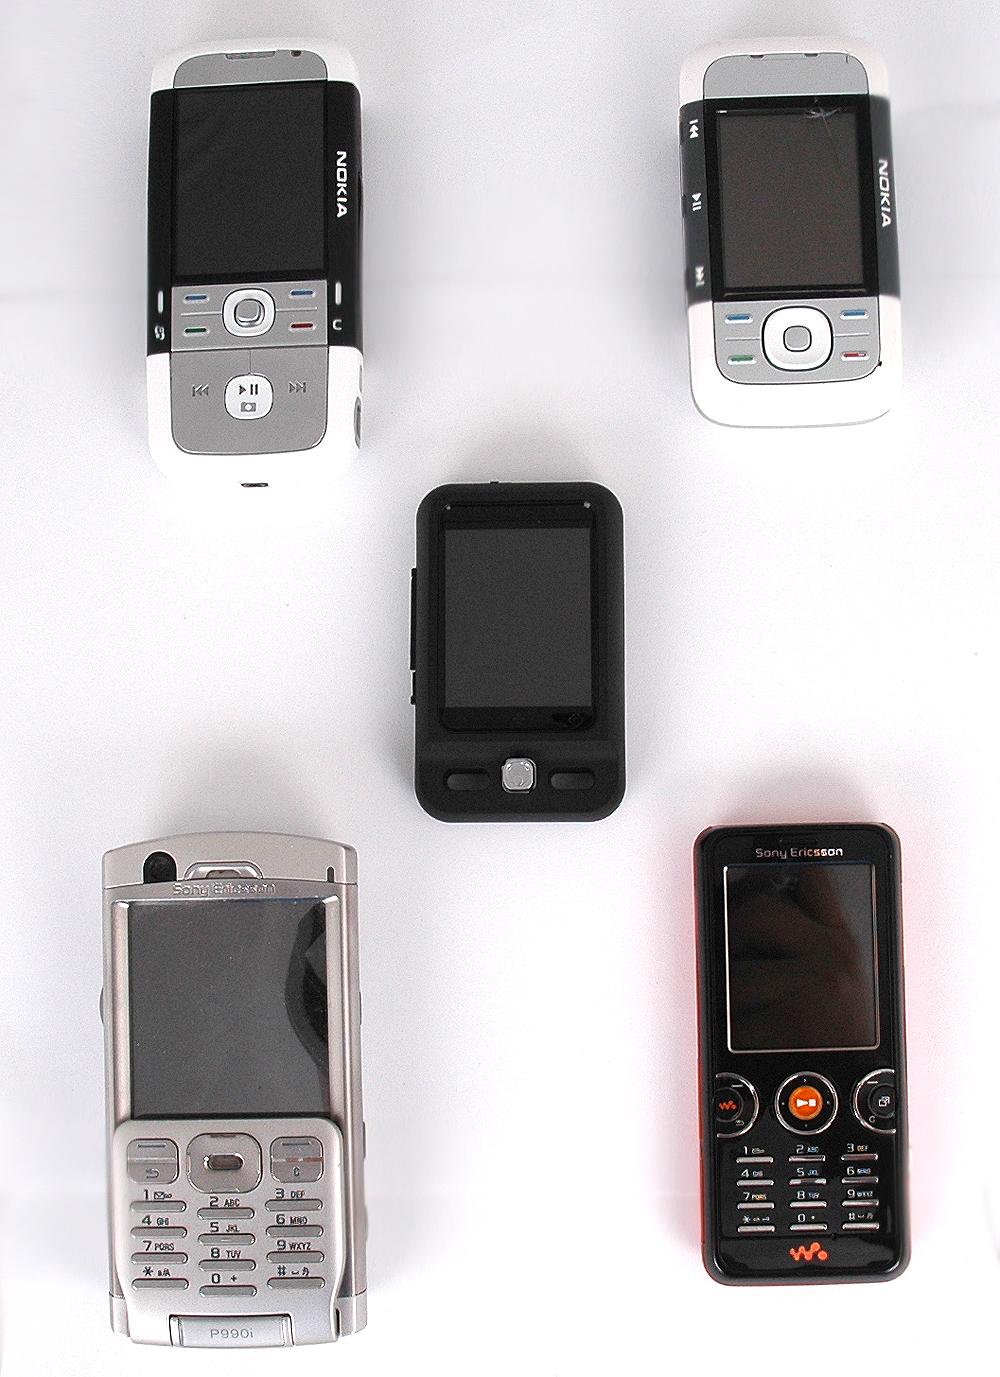 Alle telefonene på bildet har flere teknologier enn N2. Men N2 er definitivt minst.